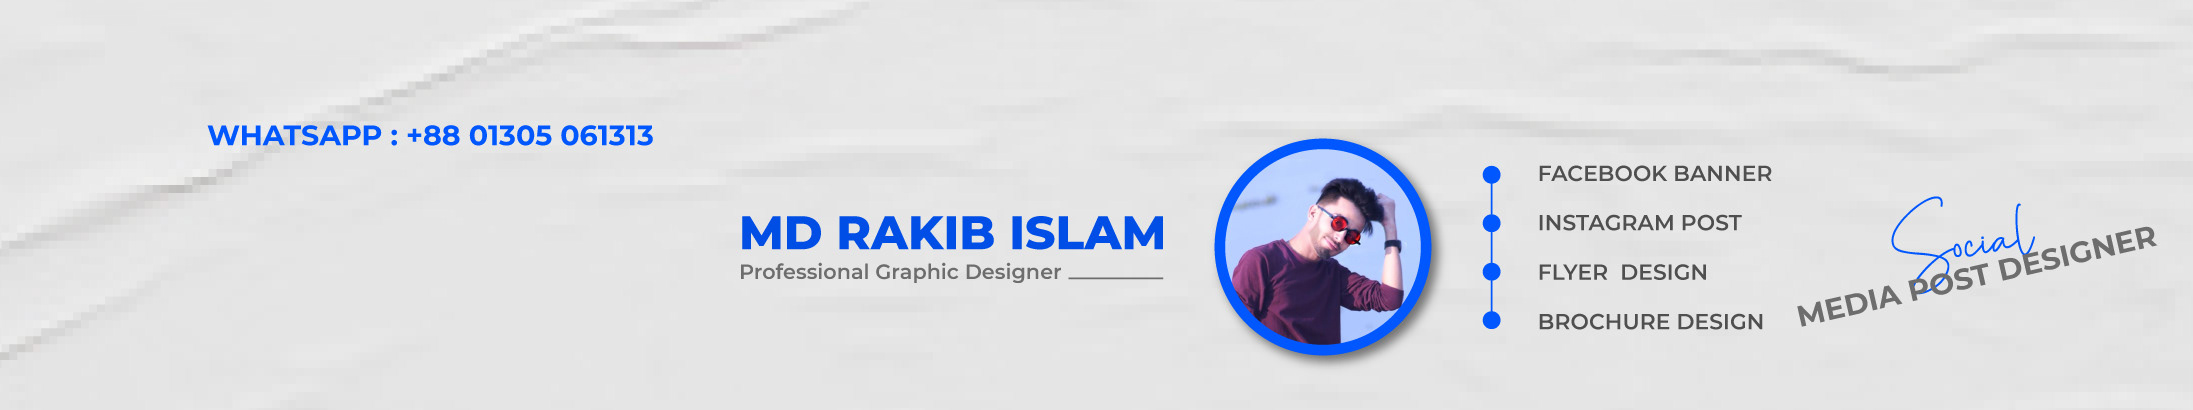 Bannière de profil de Md Rakib Islam